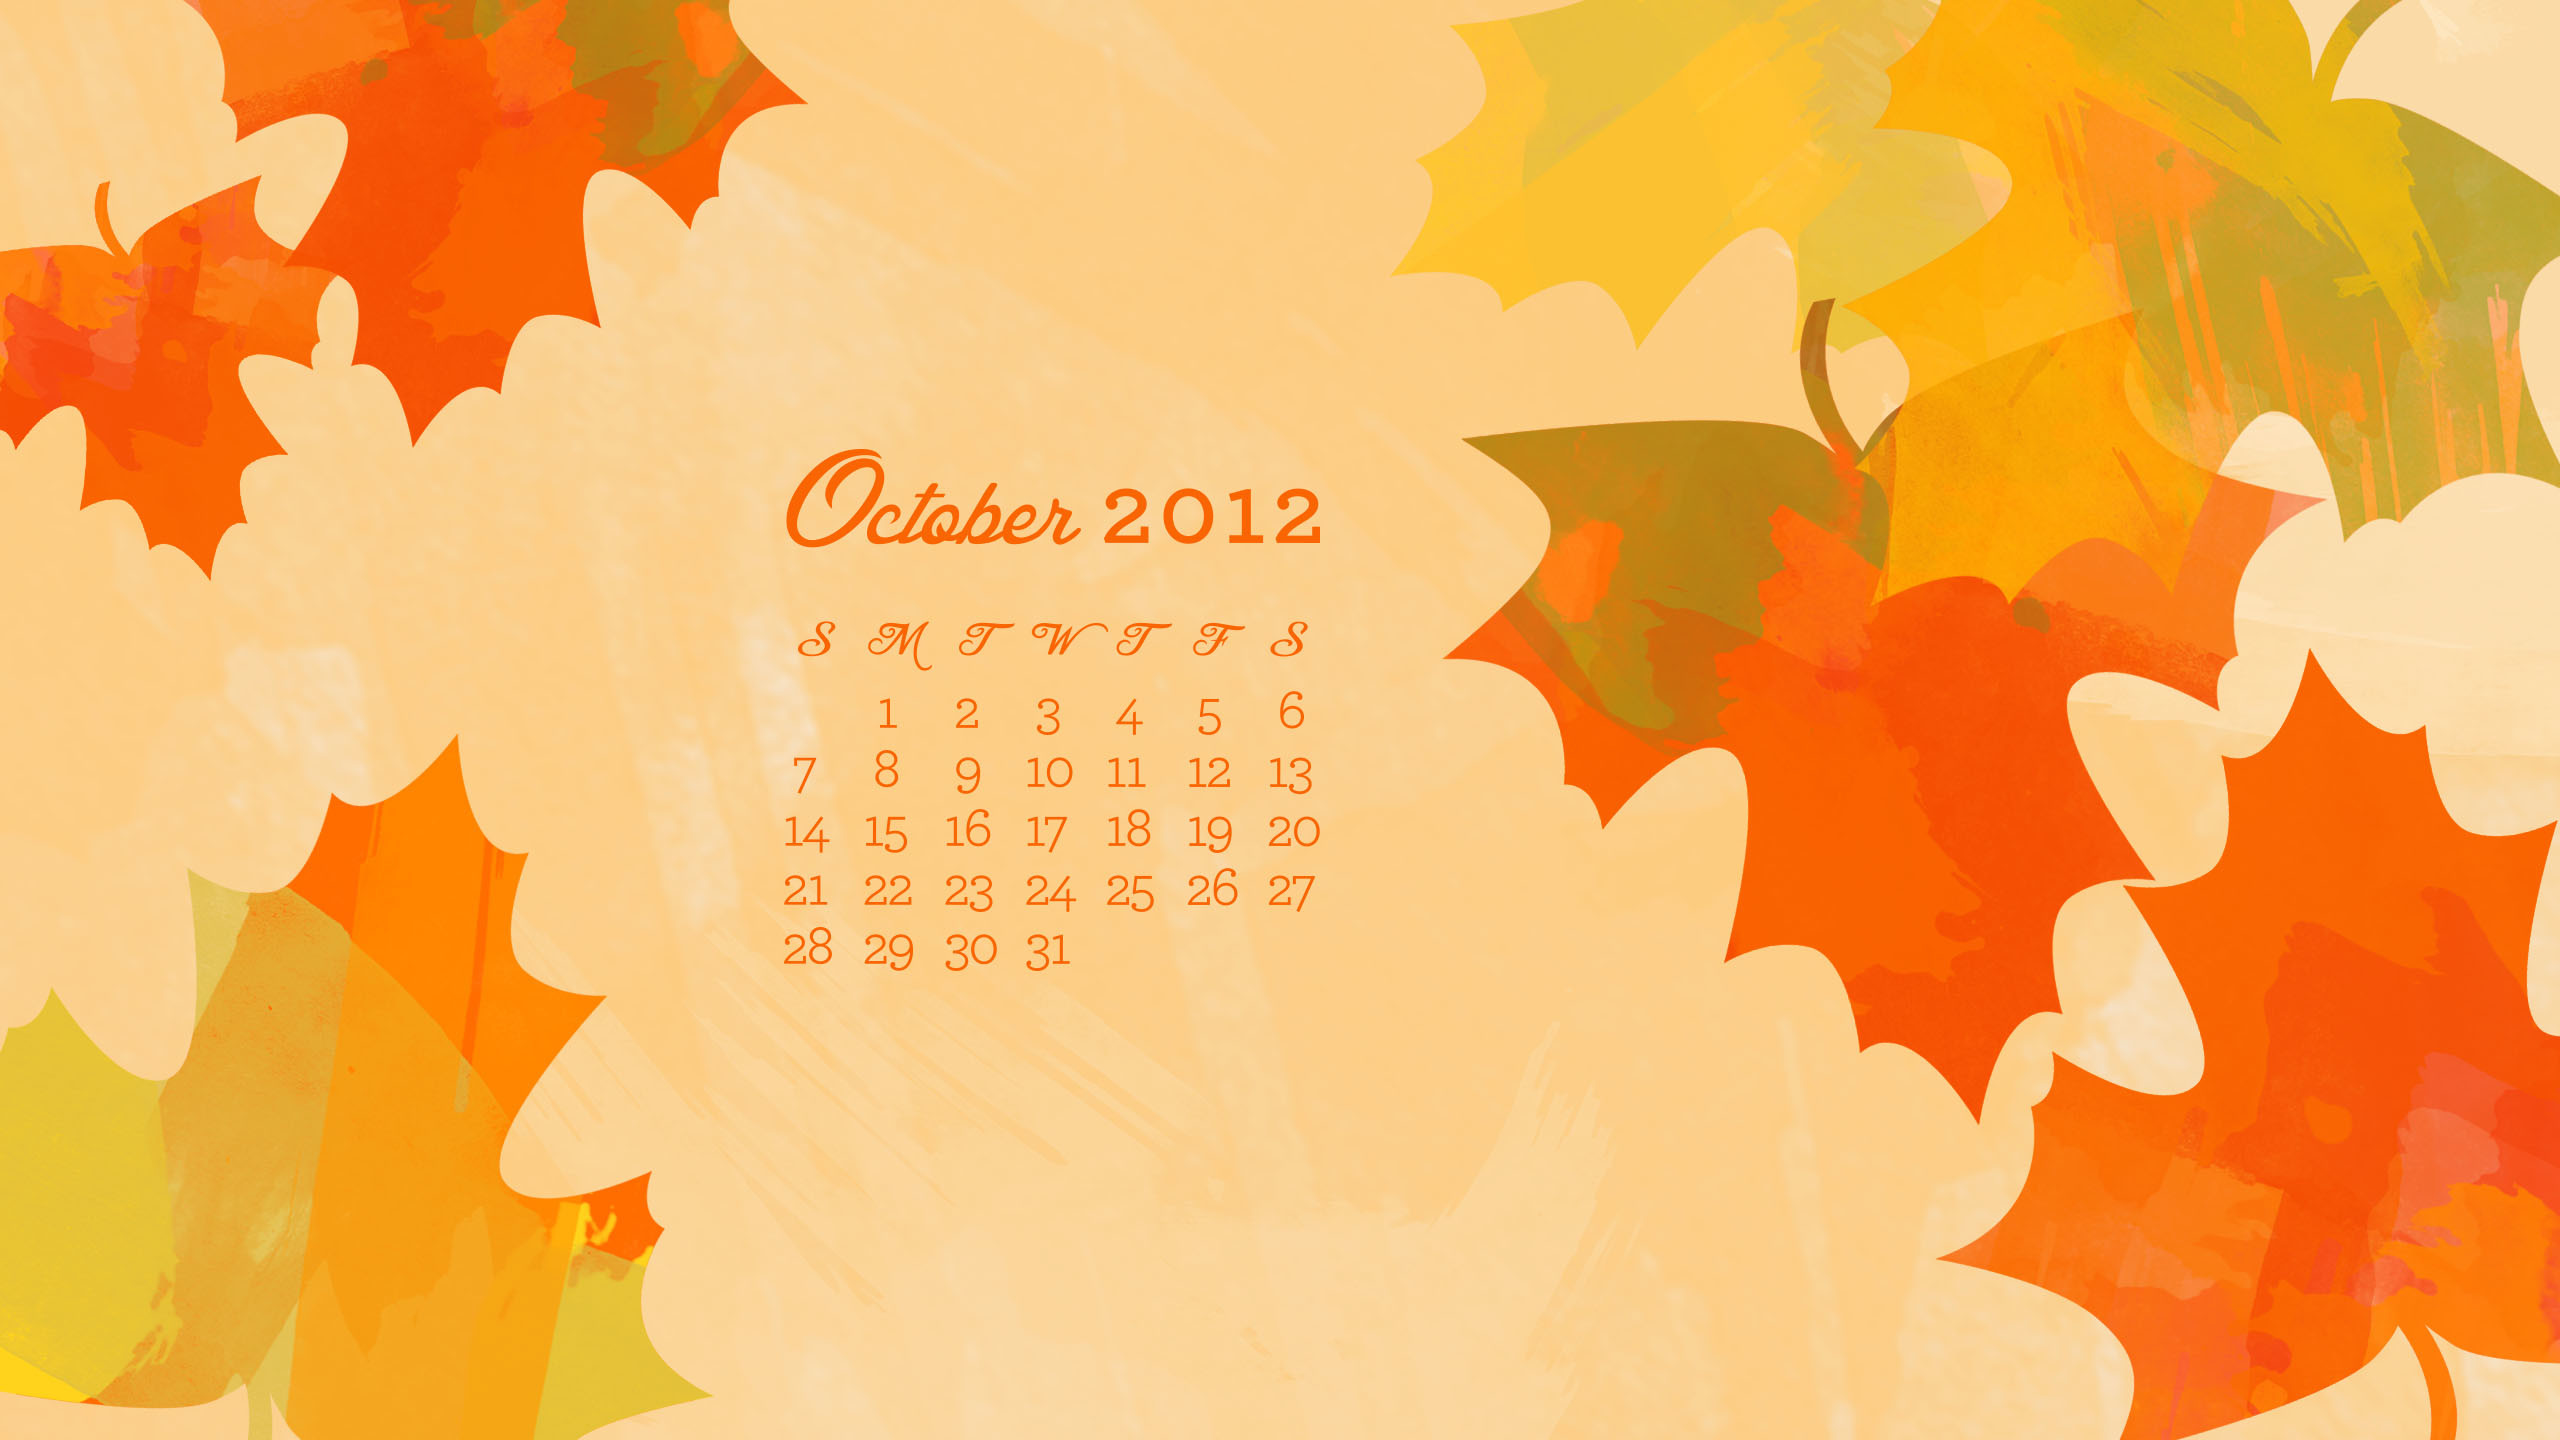 2560x1440 October 2012 Desktop, iPhone & iPad Calendar Wallpaper - Sarah Hearts